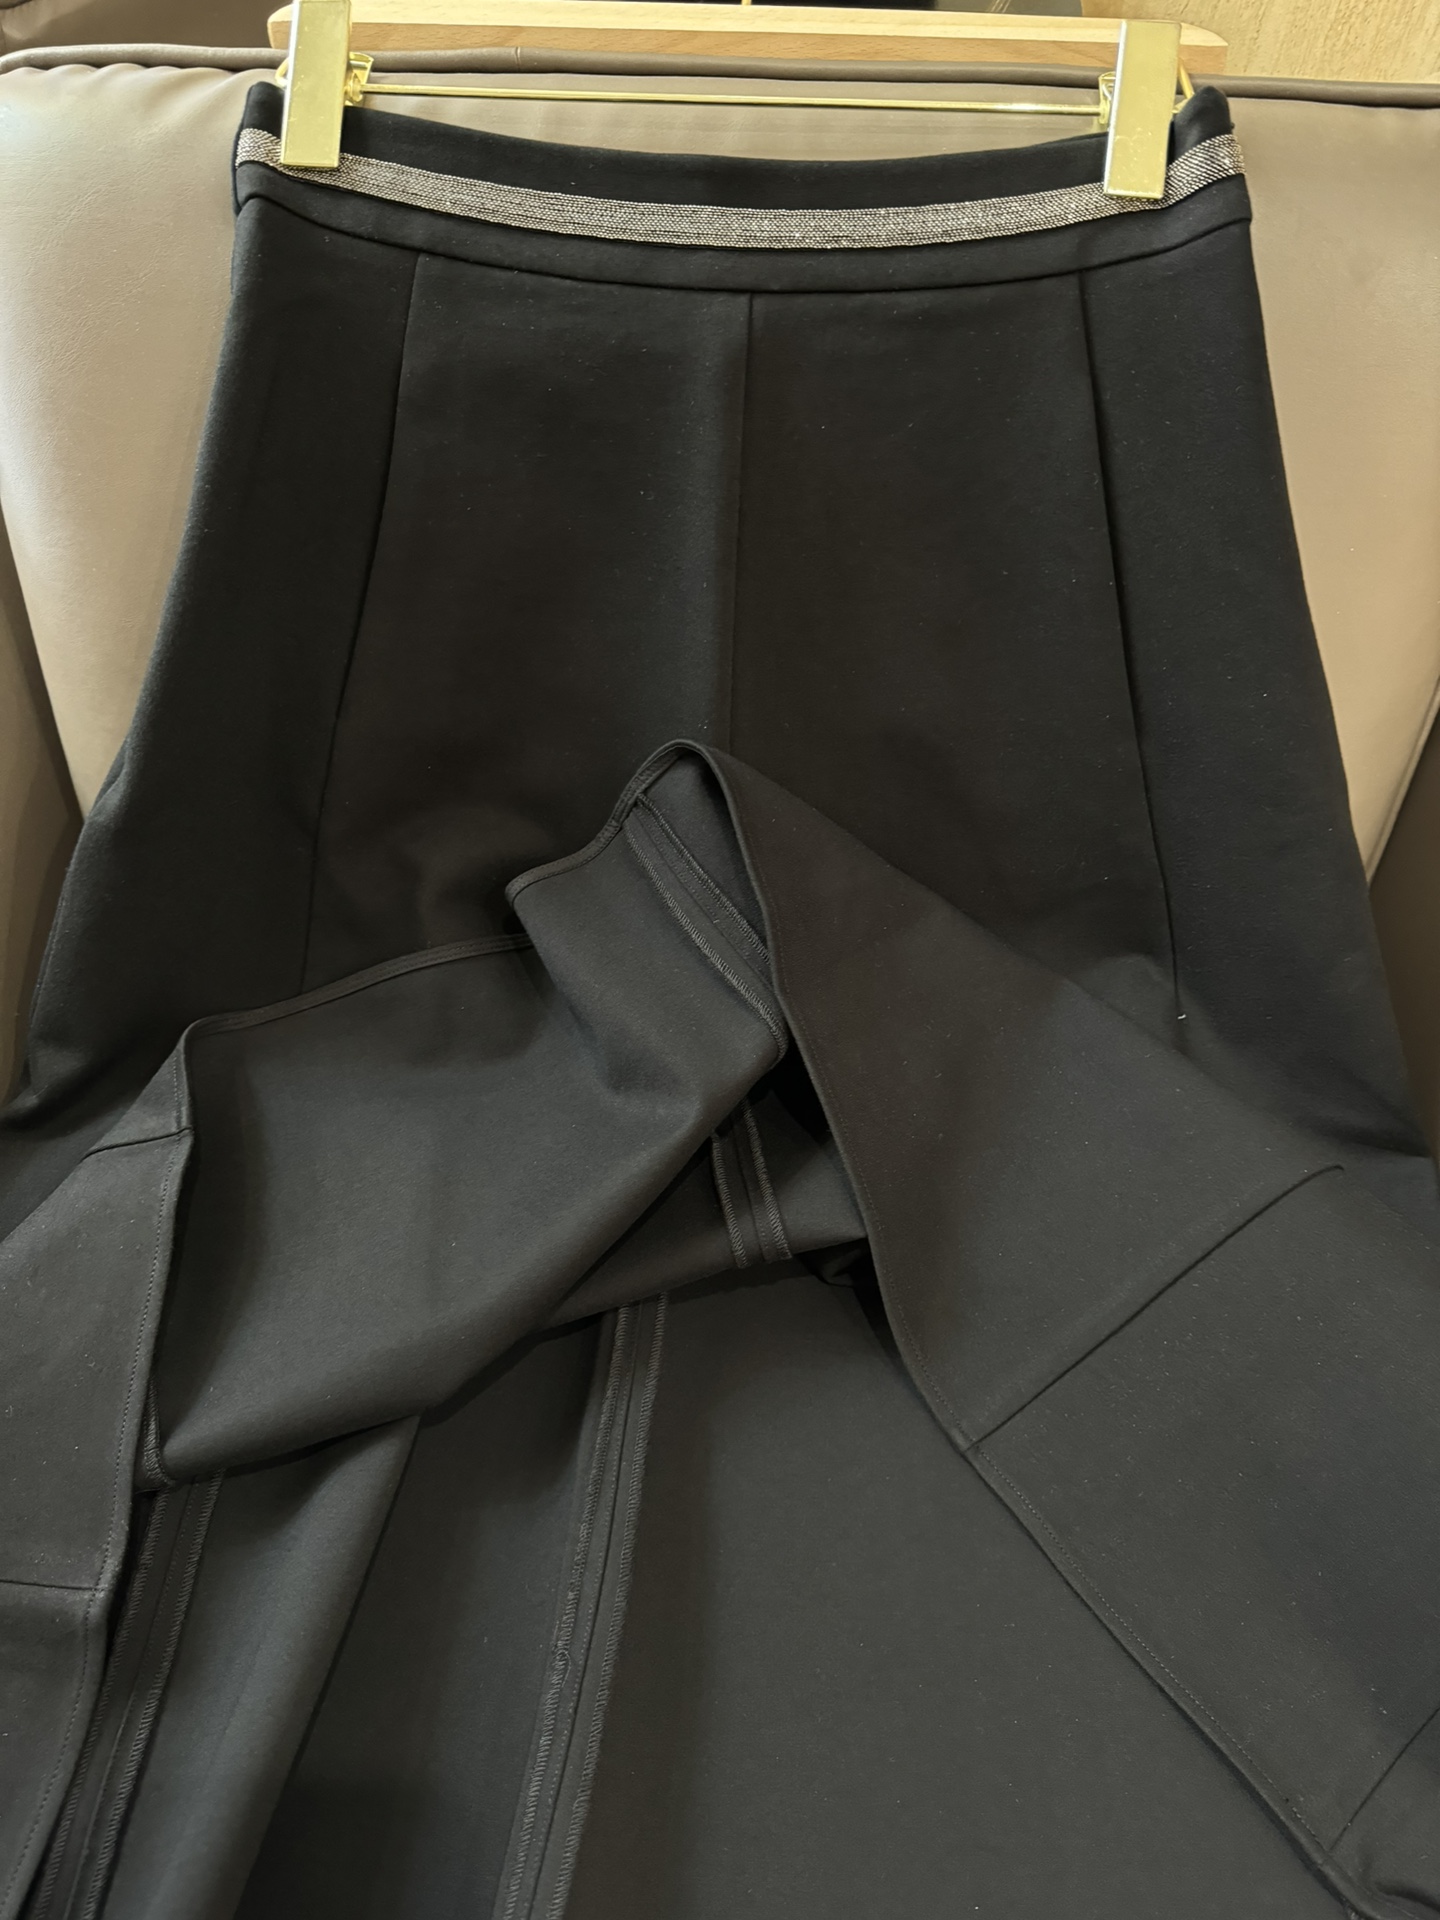 KZ003#新款半裙BC链条设计经典款长半裙黑色SMLXL